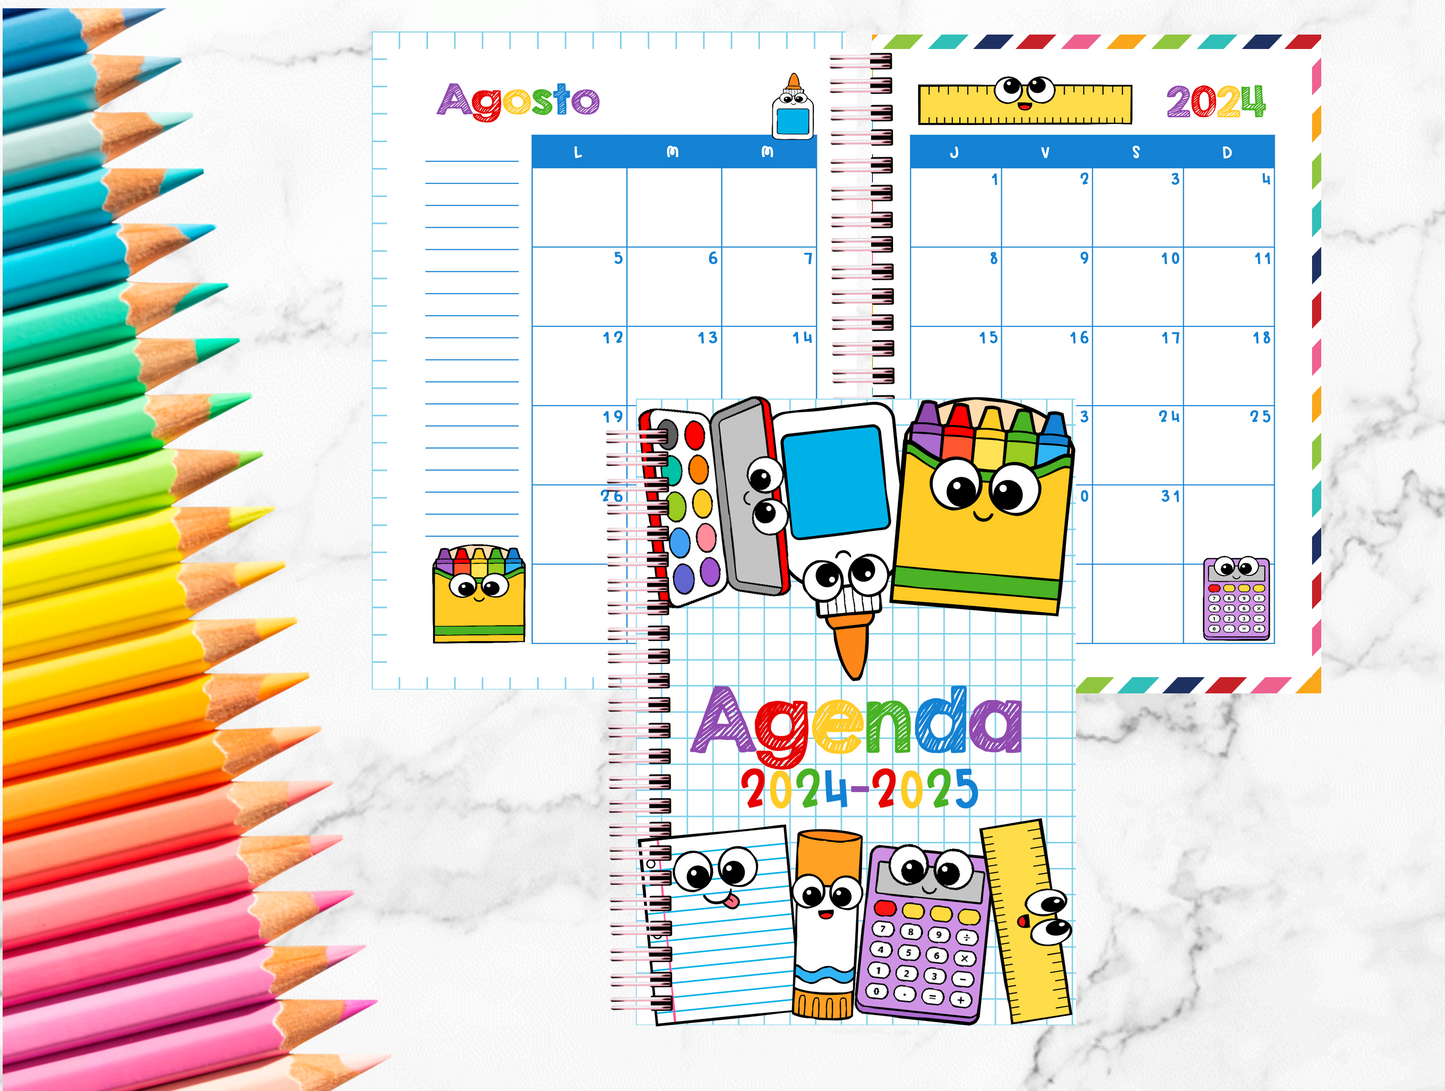 Agenda Escolar / School Year Planner/ Maestras / Estudiante